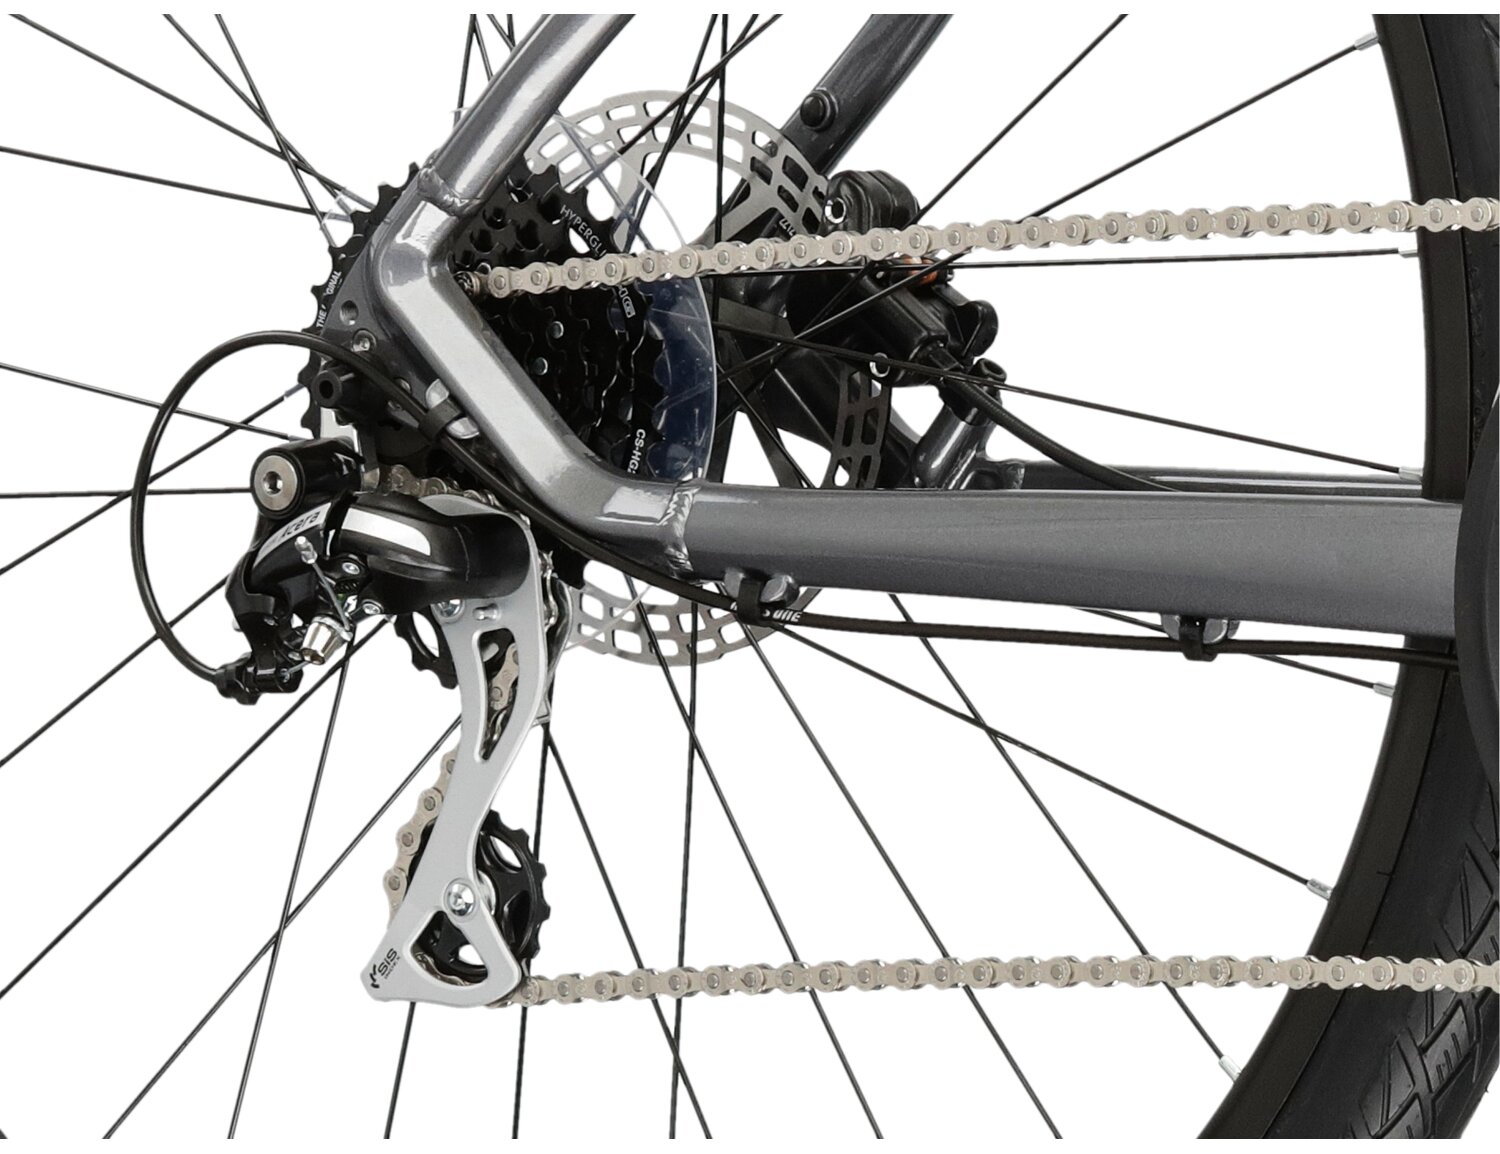  Tylna ośmiobiegowa przerzutka Shimano Acera M3020 oraz hydrauliczne hamulce tarczowe Radius w rowerze crossowym KROSS Evado 4.0 